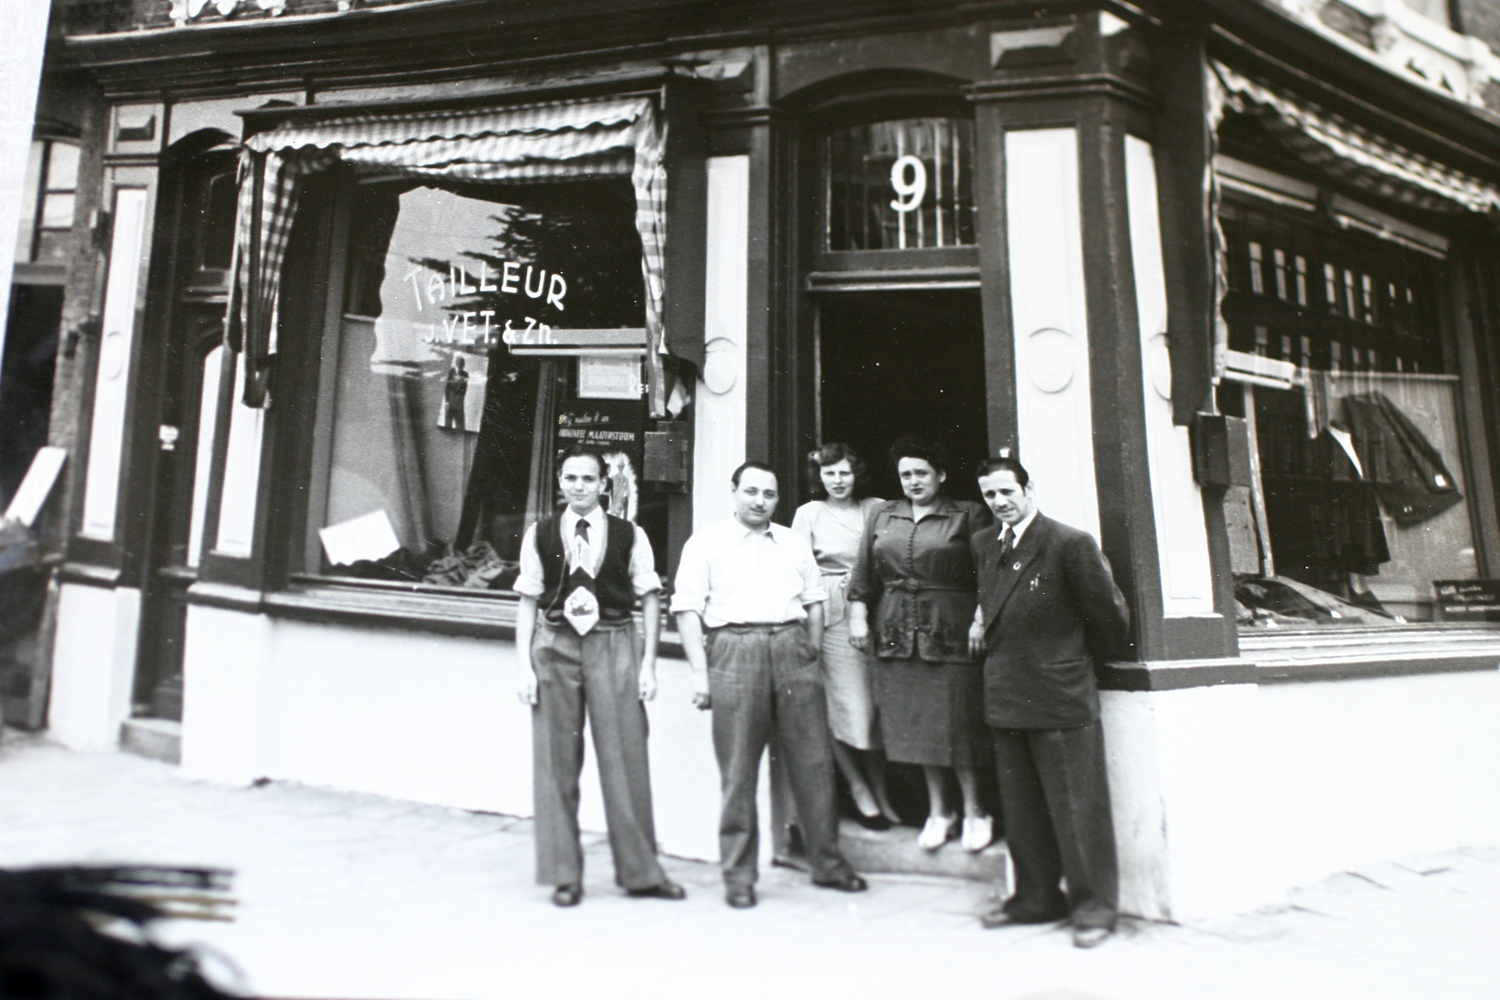 De winkel Tailleur Vet op de hoek P. Vlamingstraat en Dappermarkt, staan van links naar rechts Joop Vet, Ben Vet en vrouw, en moeder en vader Vet omtreeks 1953-1955. - Geheugen